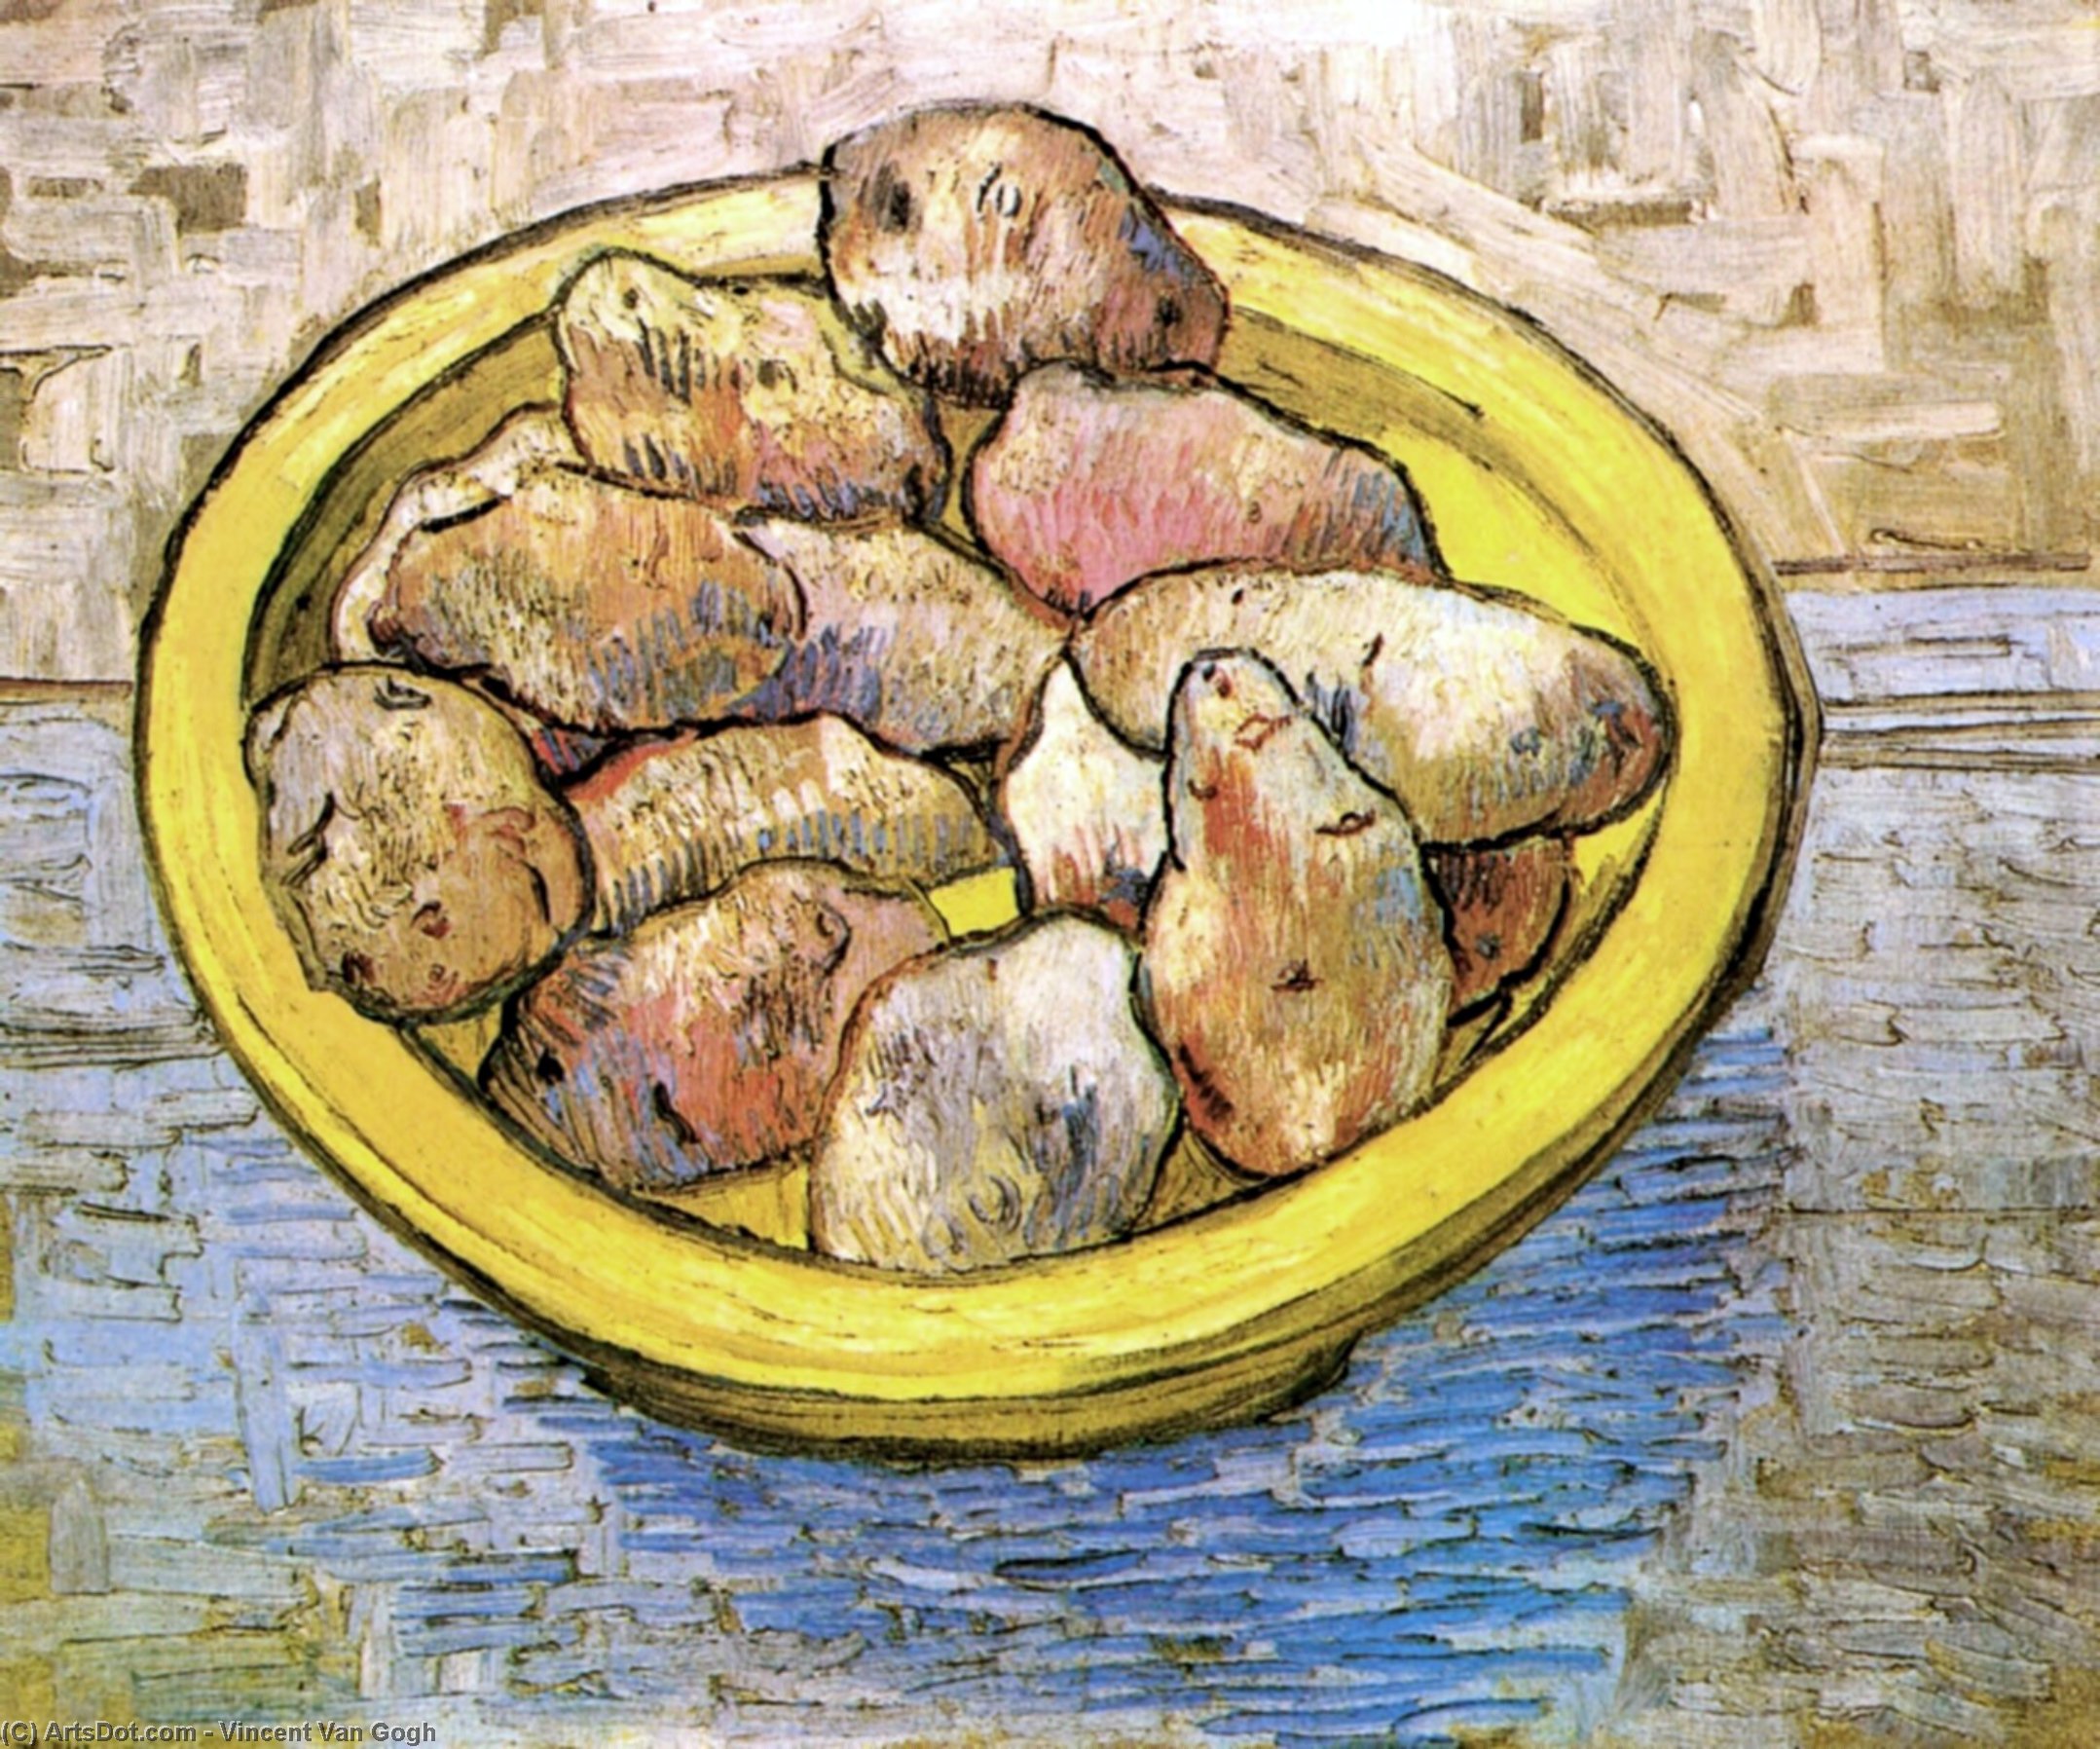 WikiOO.org - Enciklopedija likovnih umjetnosti - Slikarstvo, umjetnička djela Vincent Van Gogh - Still Life Potatoes in a Yellow Dish